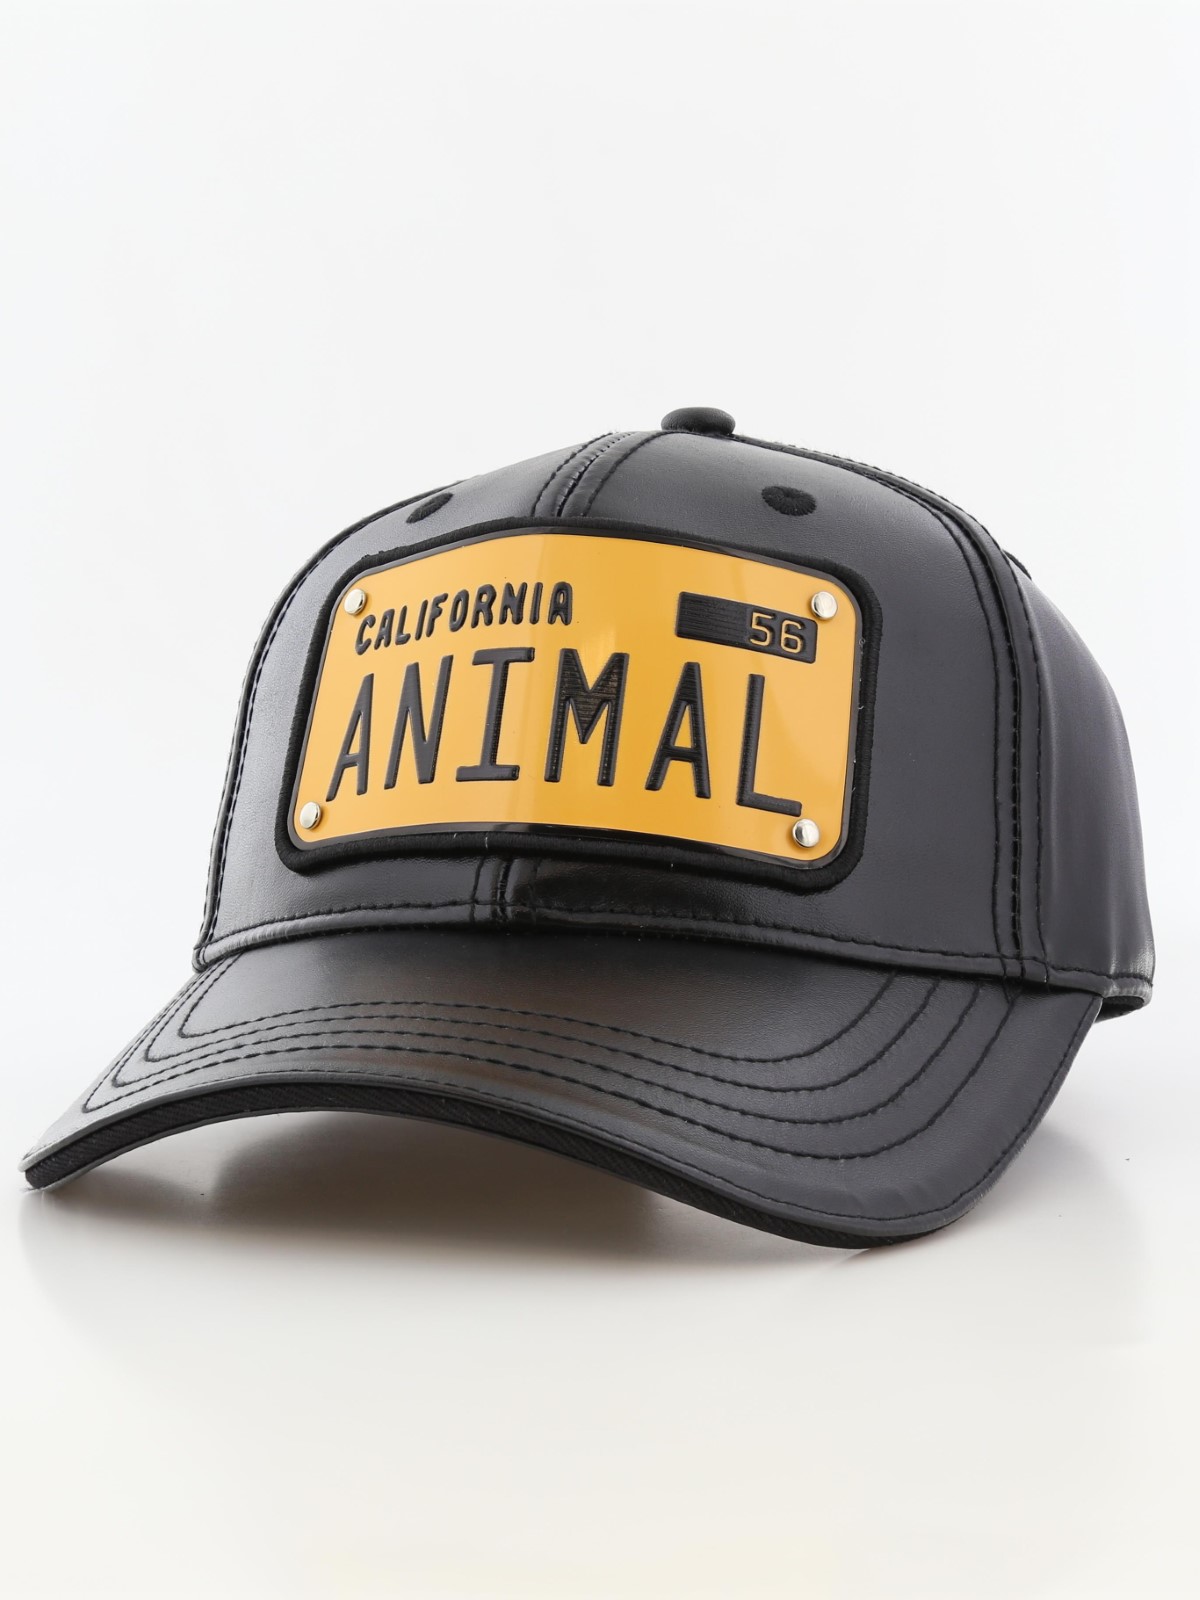 قبعة للجنسين بلوحة تحمل عبارة California No. Animal نموذج 1 من رقم بلون أسود